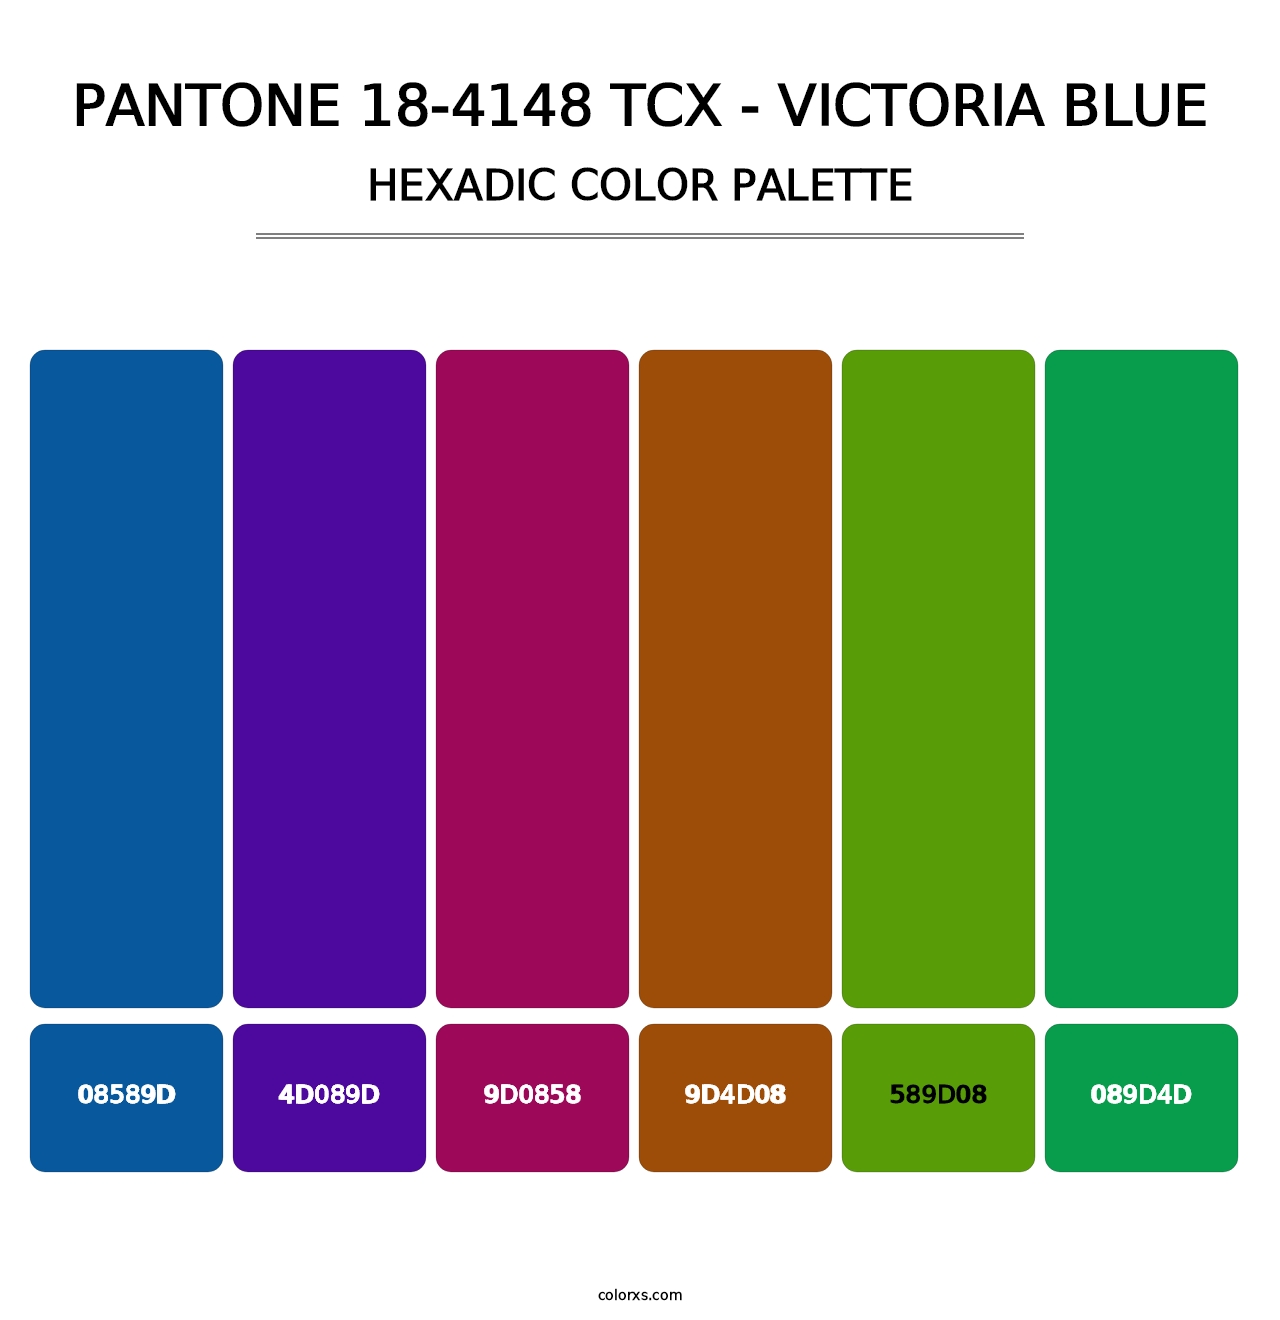 PANTONE 18-4148 TCX - Victoria Blue - Hexadic Color Palette